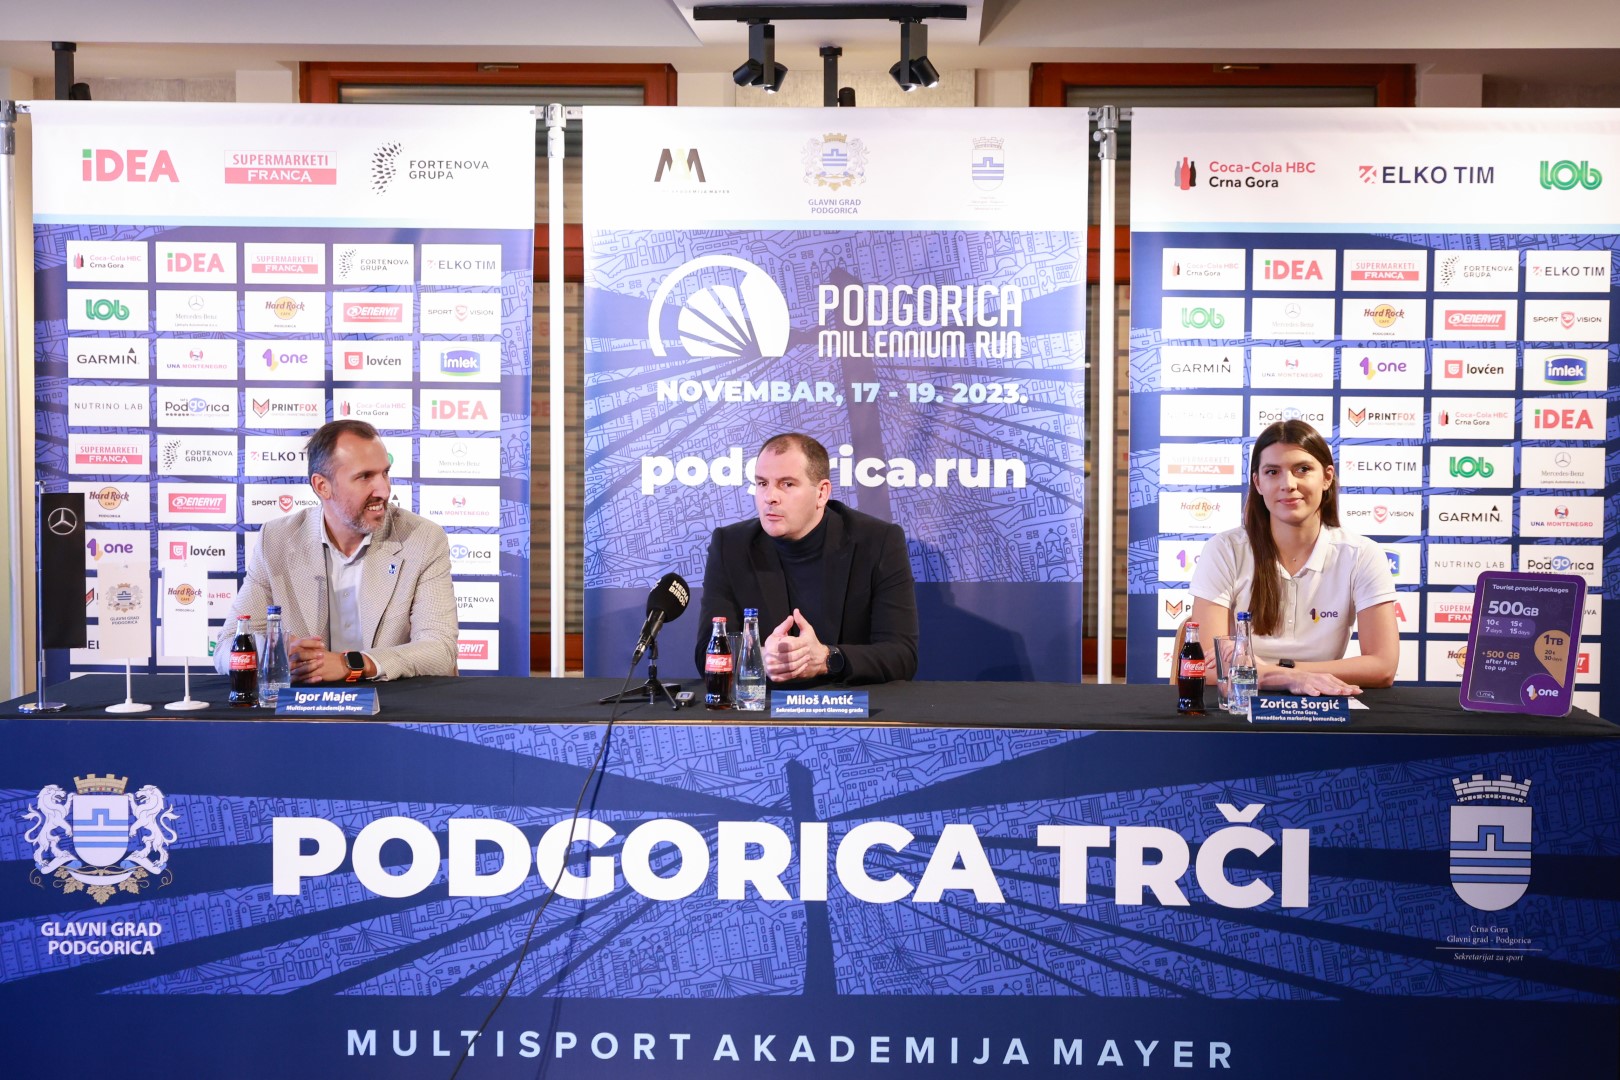 Podgorica Millennium Run: Sve je spremno za spektakl; Više od 2500 učesnika iz 36 država svijeta